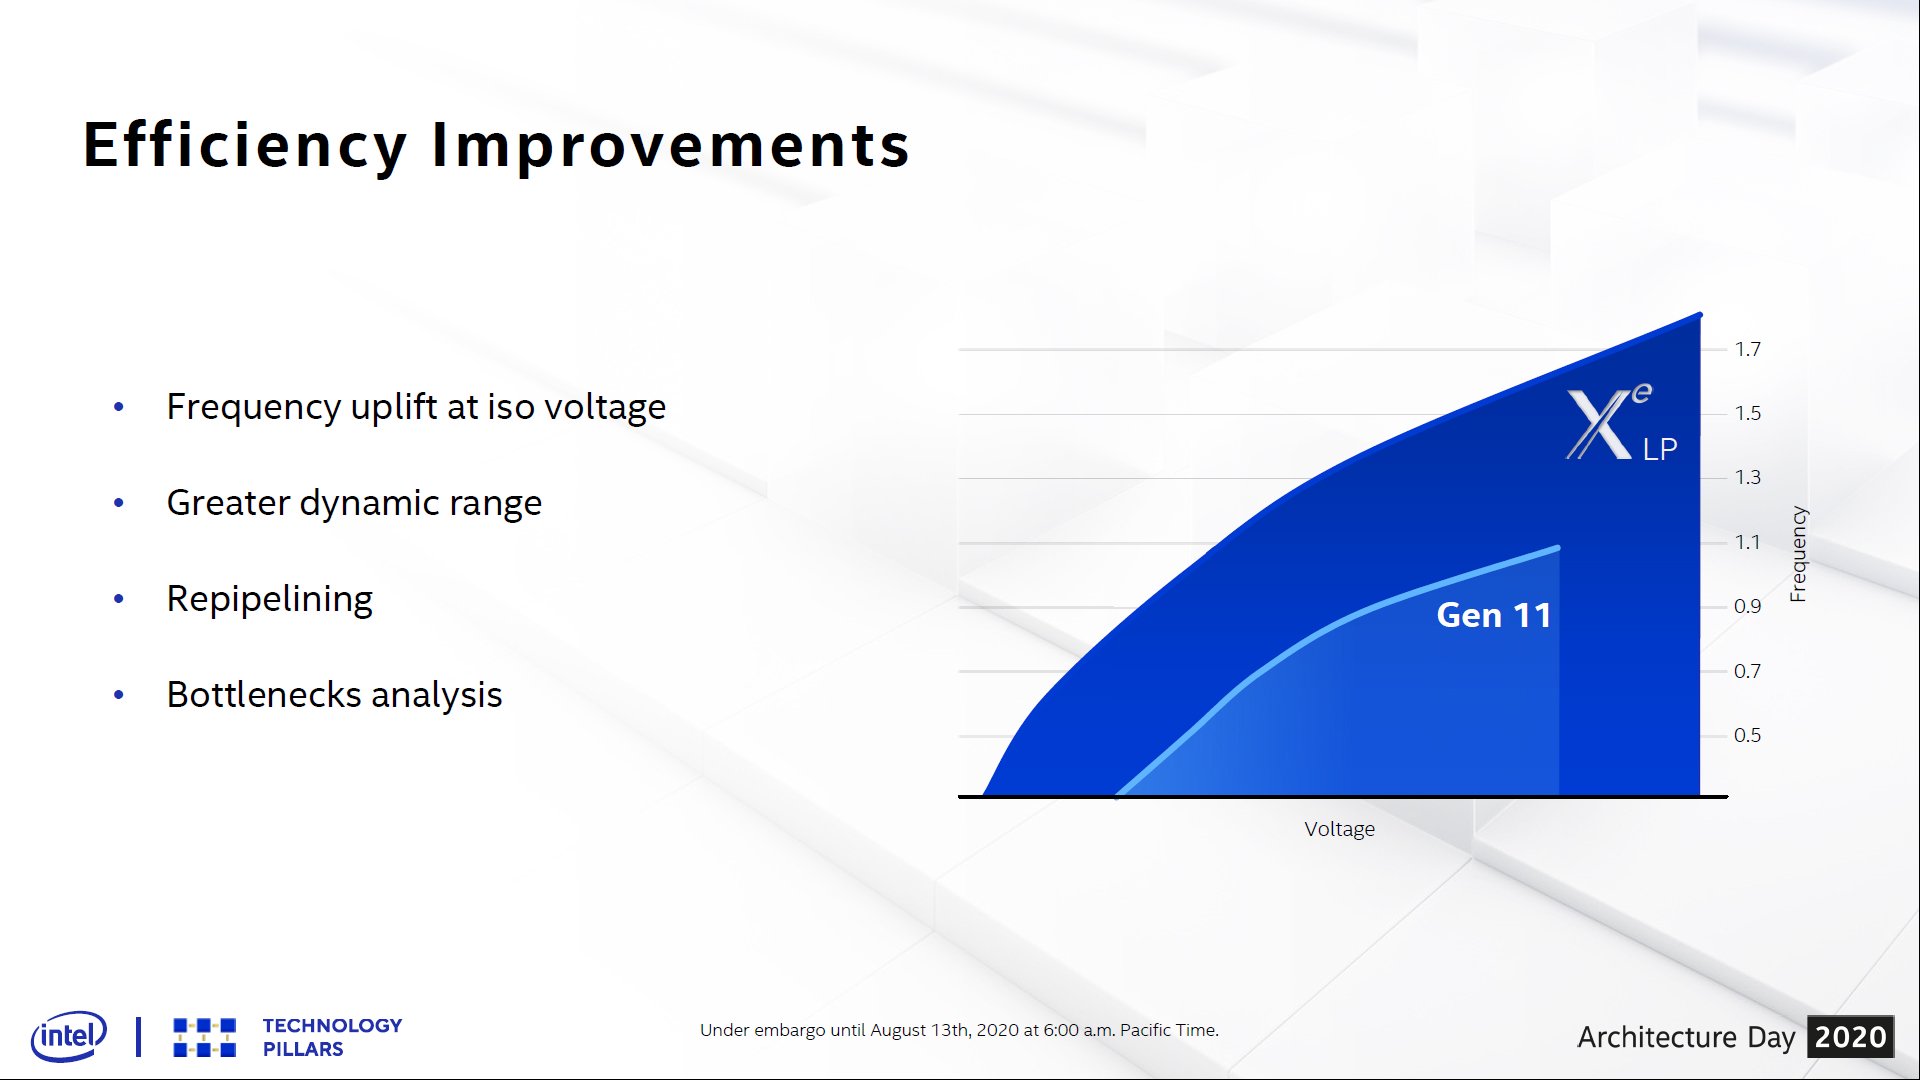 Curva V/F mostra que nova arquitetura de GPUs Xe entrega mais desempenho e eficiência em relação à Gen11